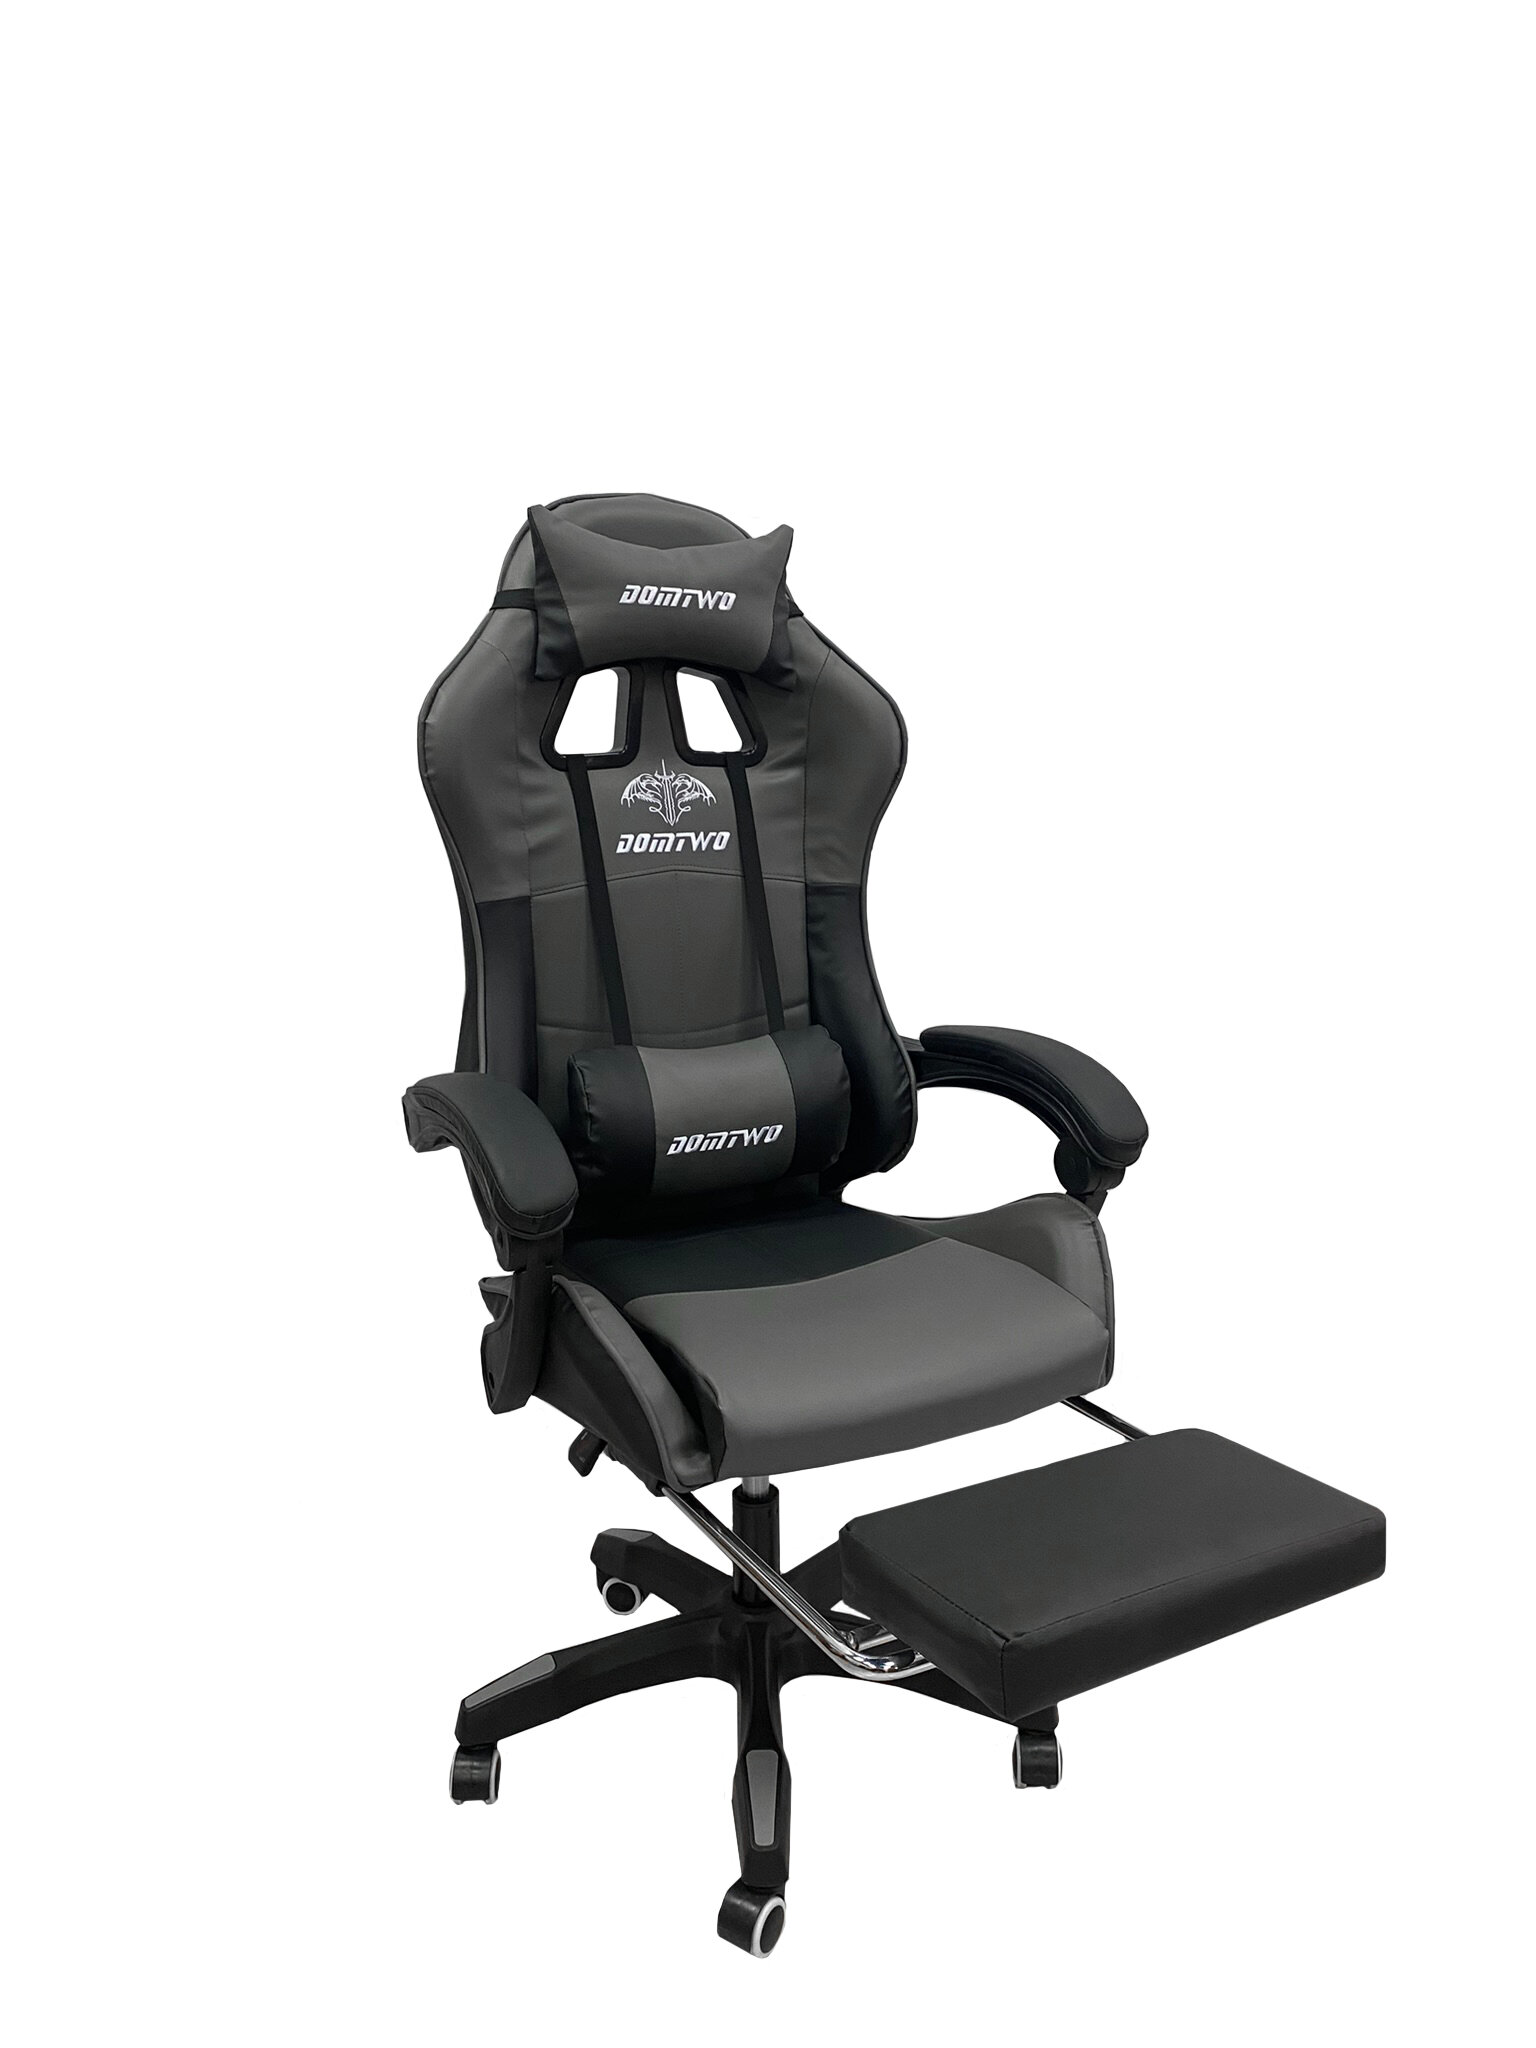 Компьютерное кресло Like Regal 206 игровое, обивка: искусственная кожа, цвет: черный/серый